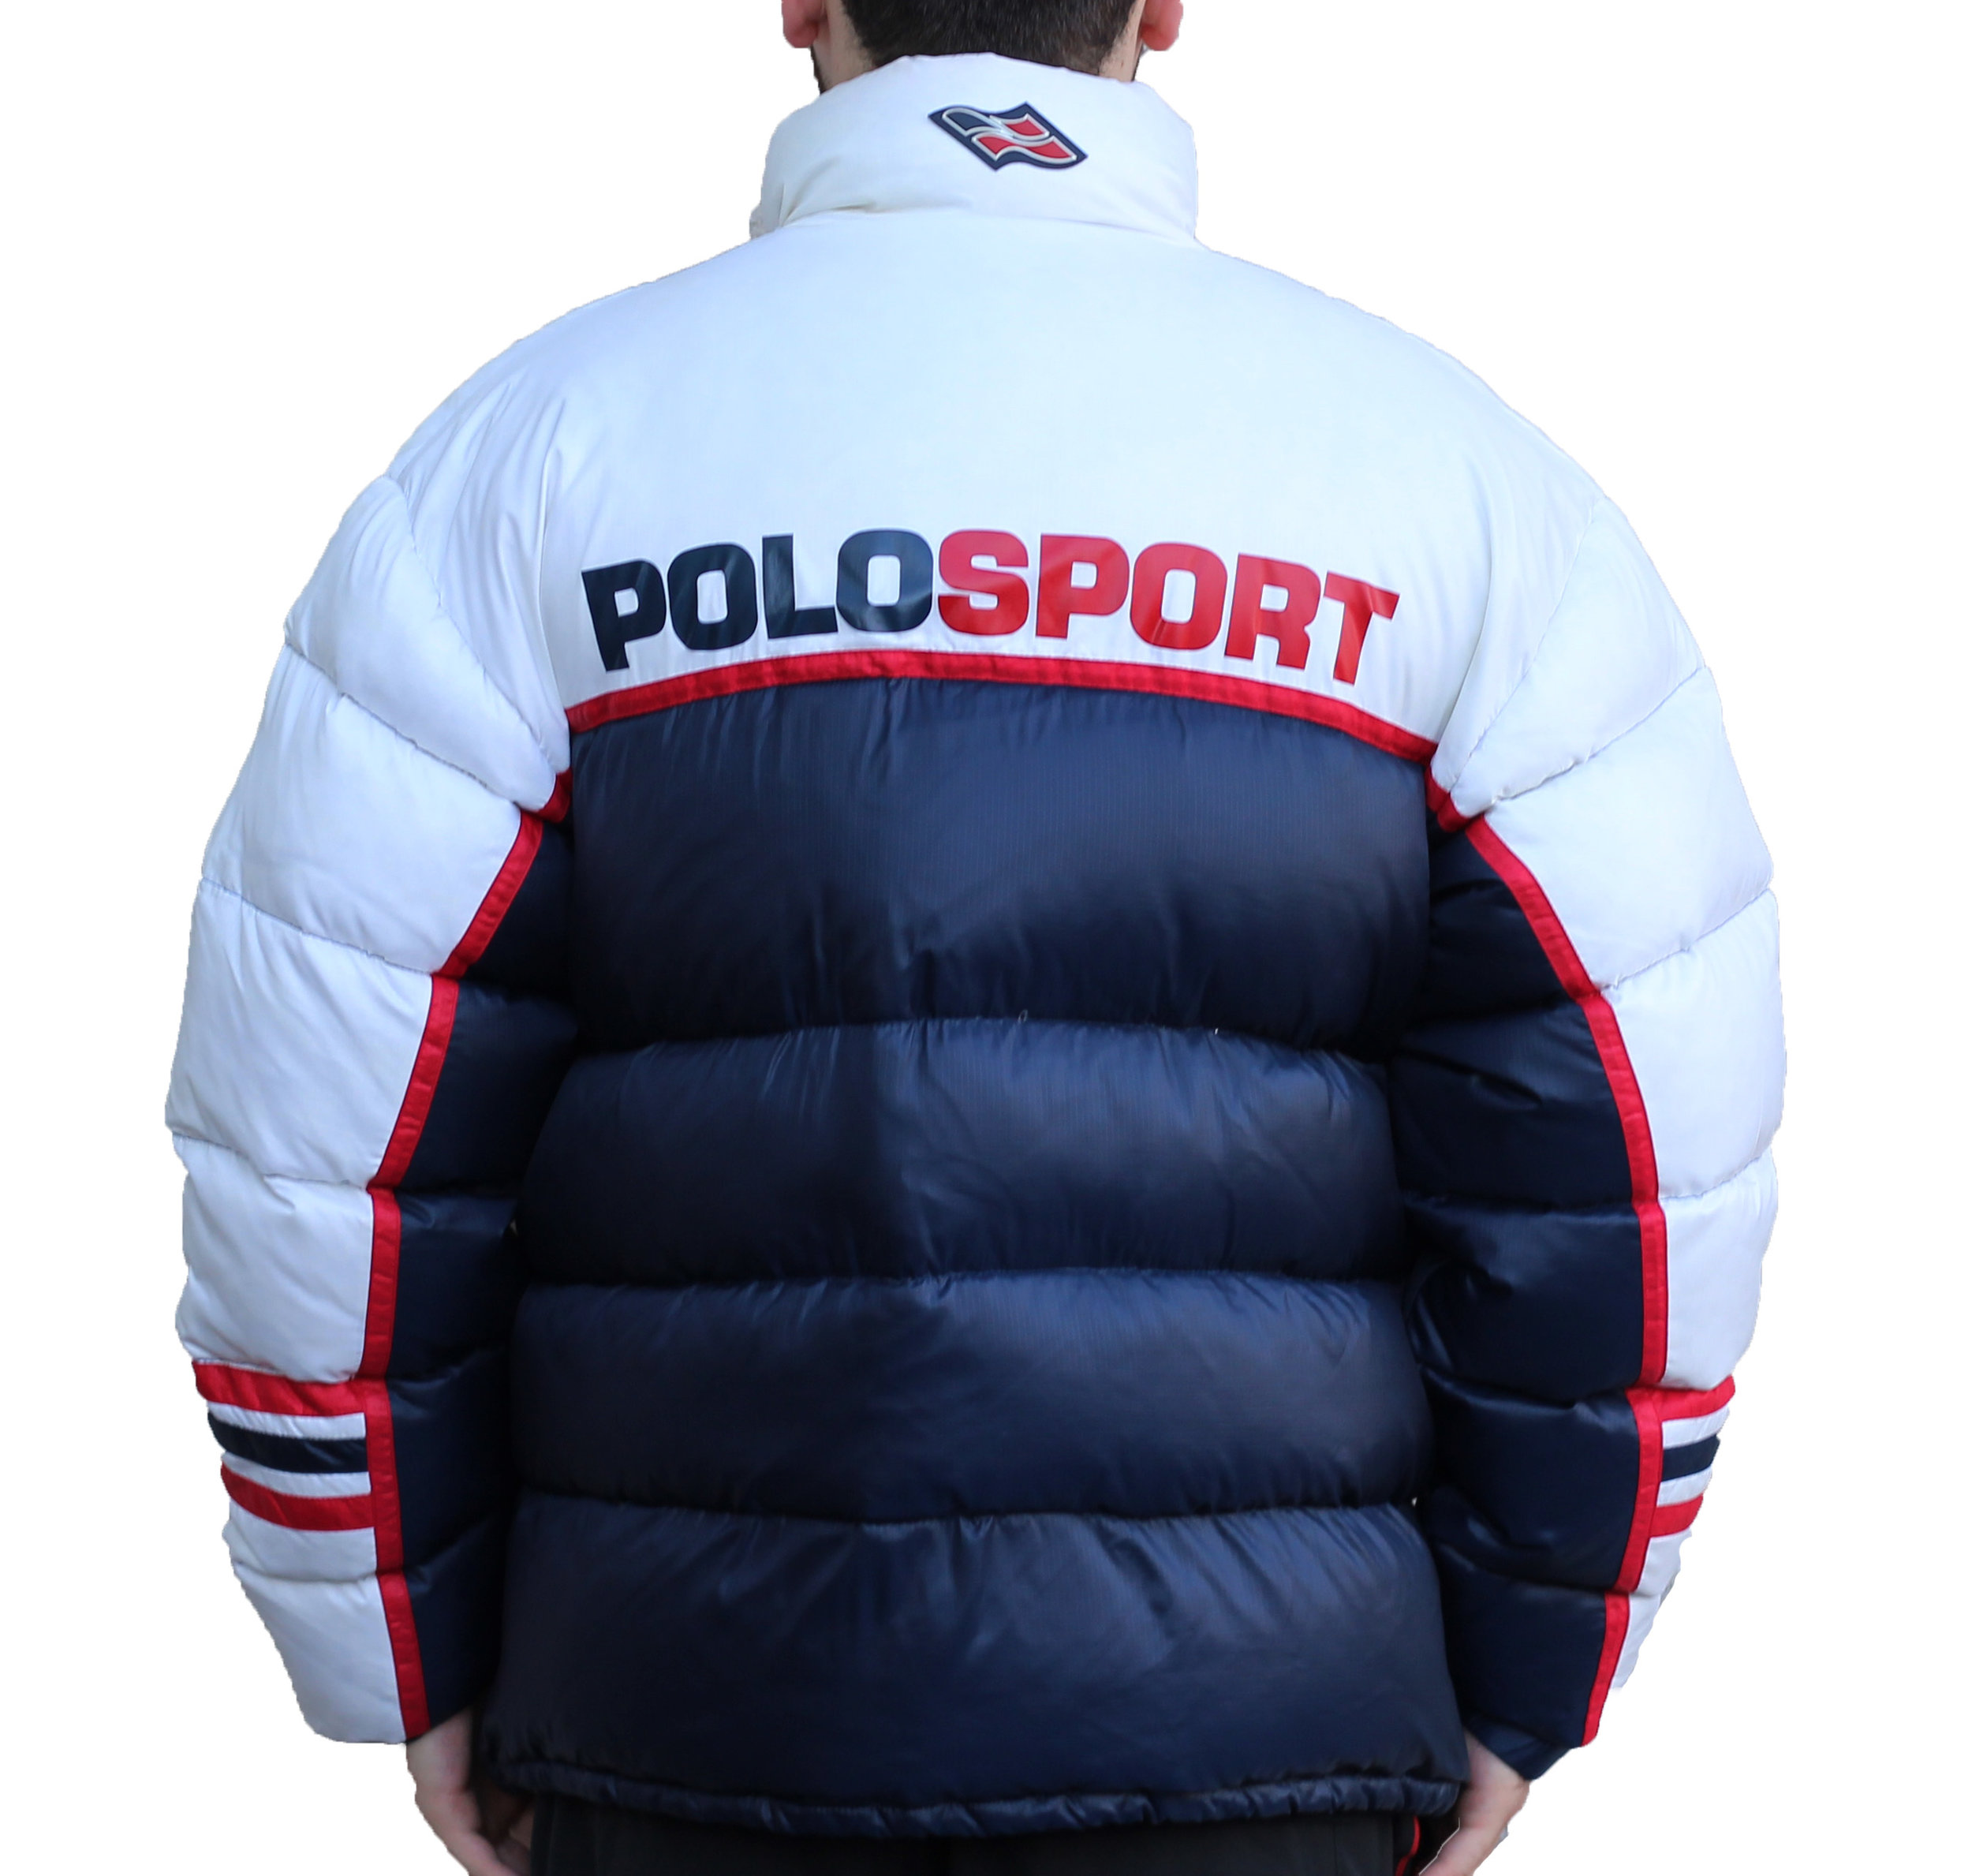 polo sport bubble jacket